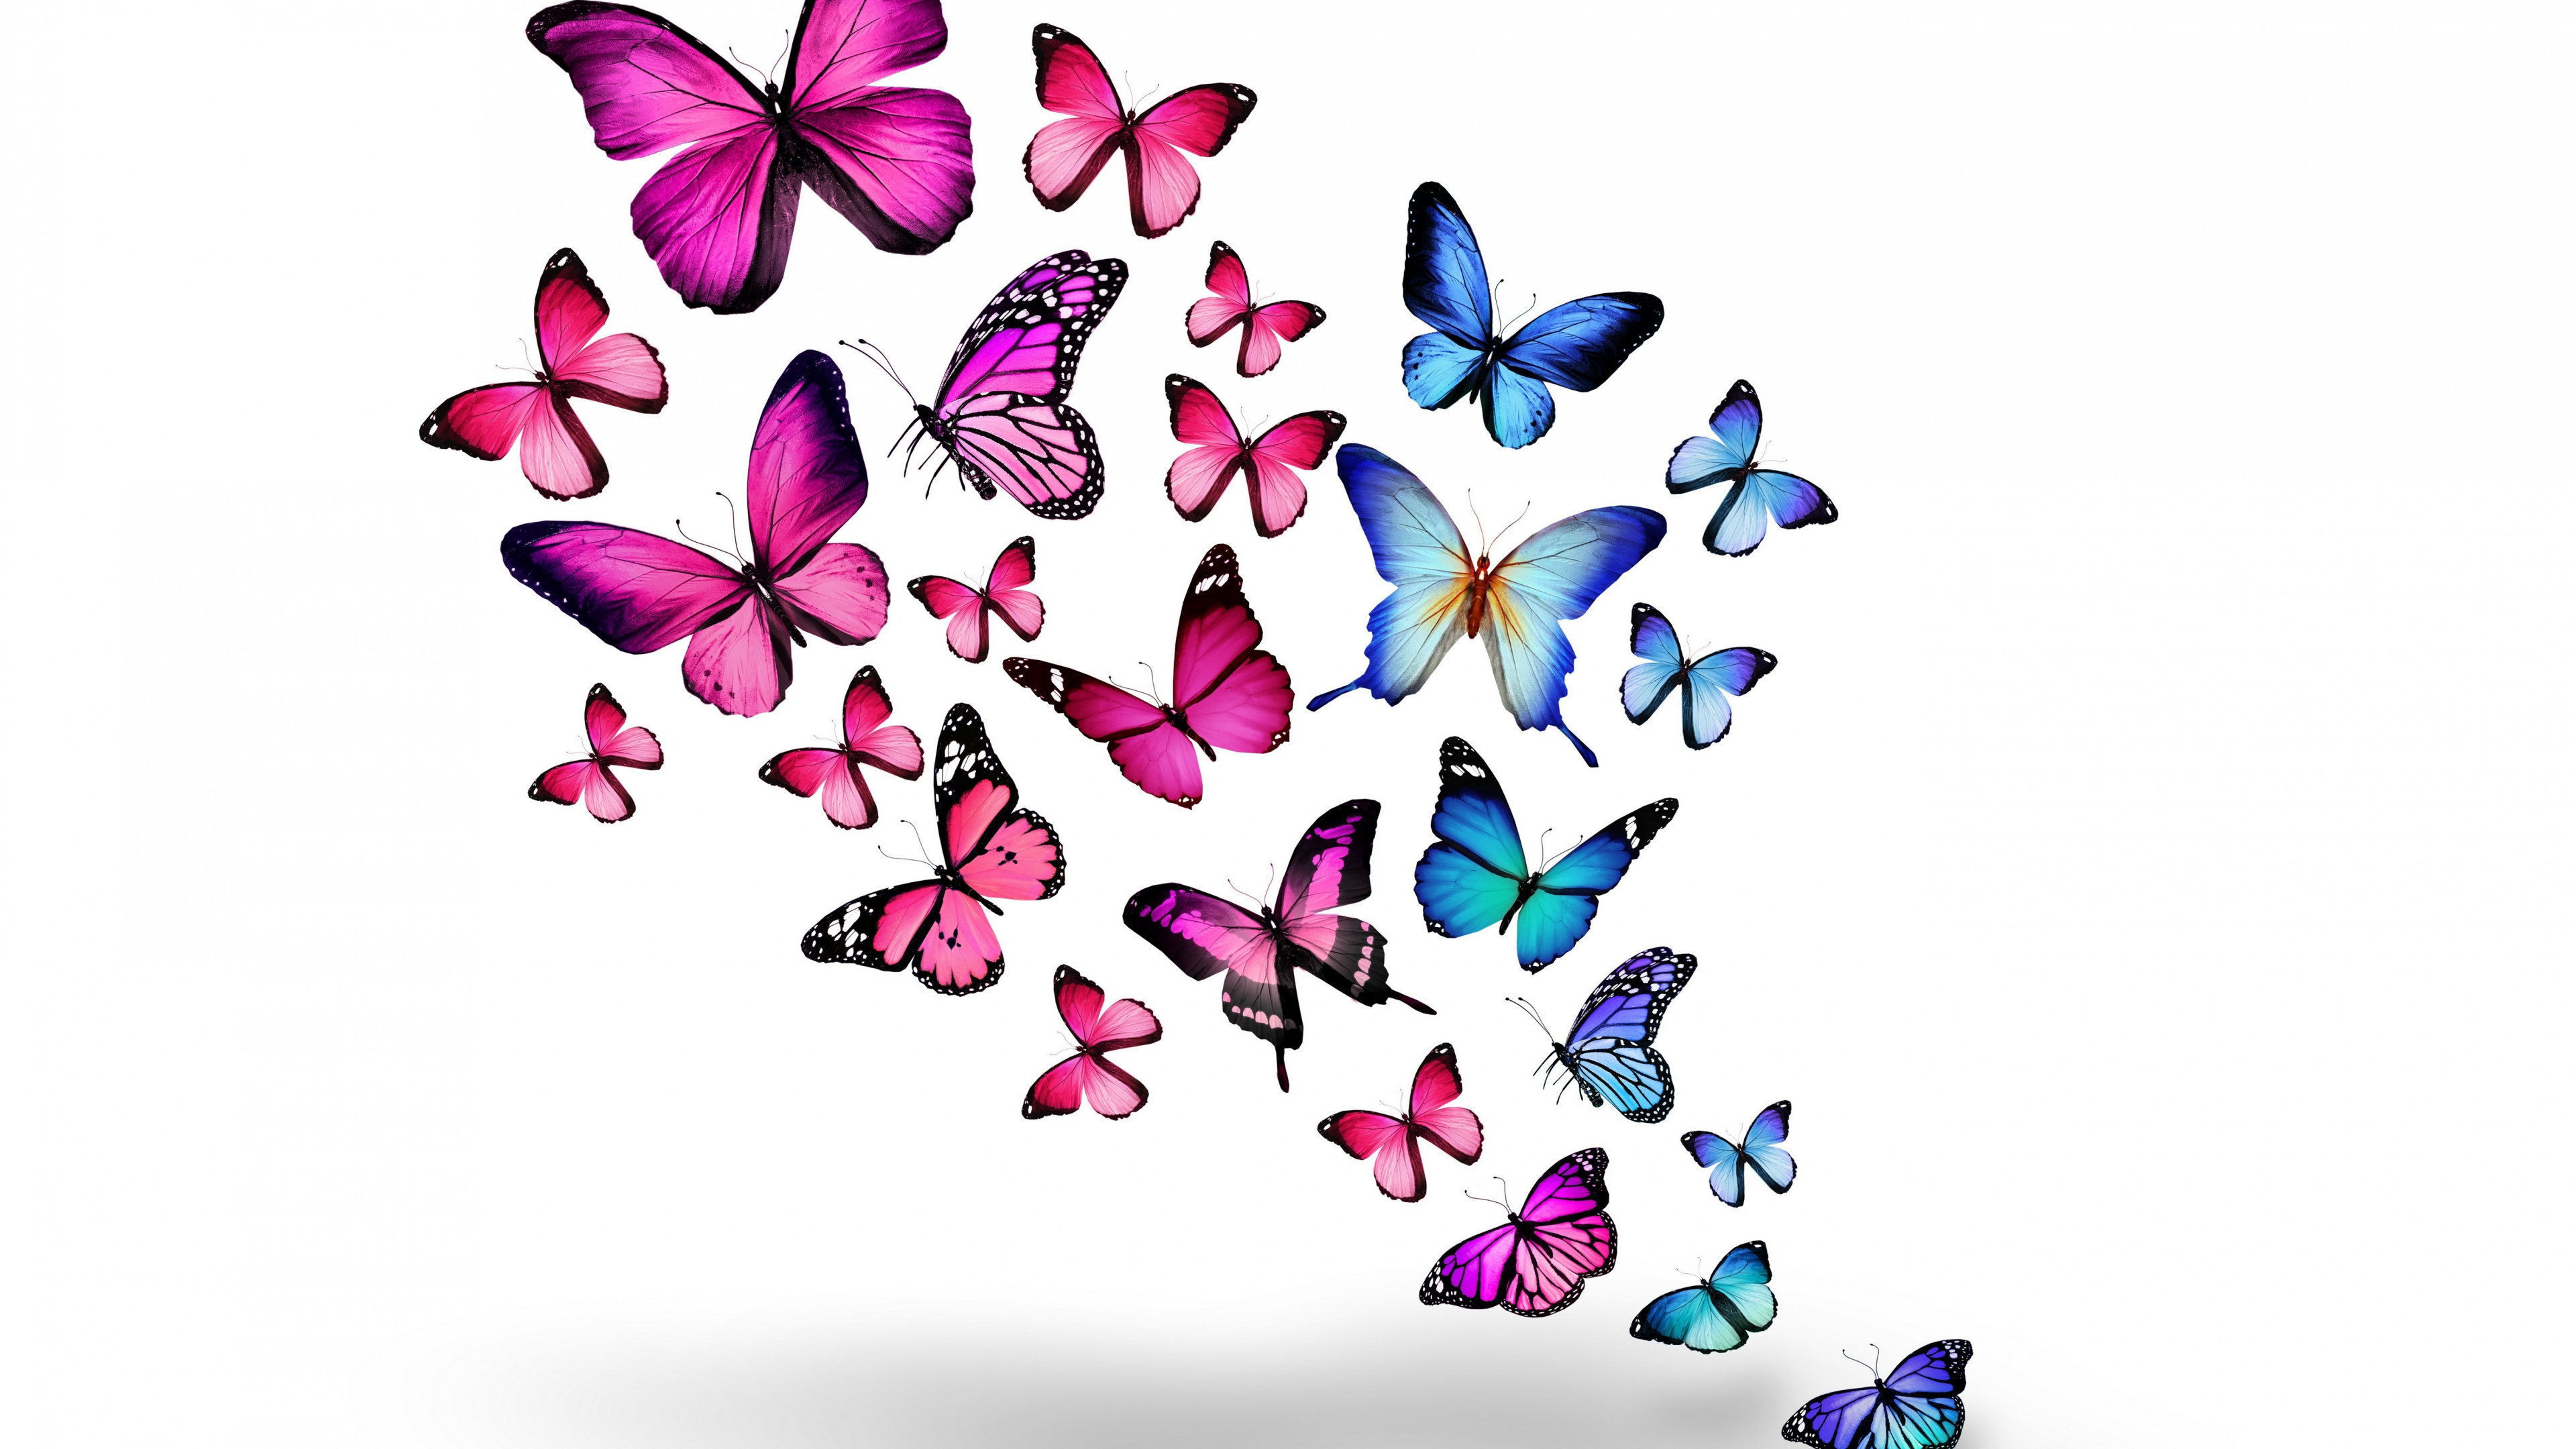 Papillons Bleus et Violets Sur Fond Blanc. Wallpaper in 3840x2160 Resolution